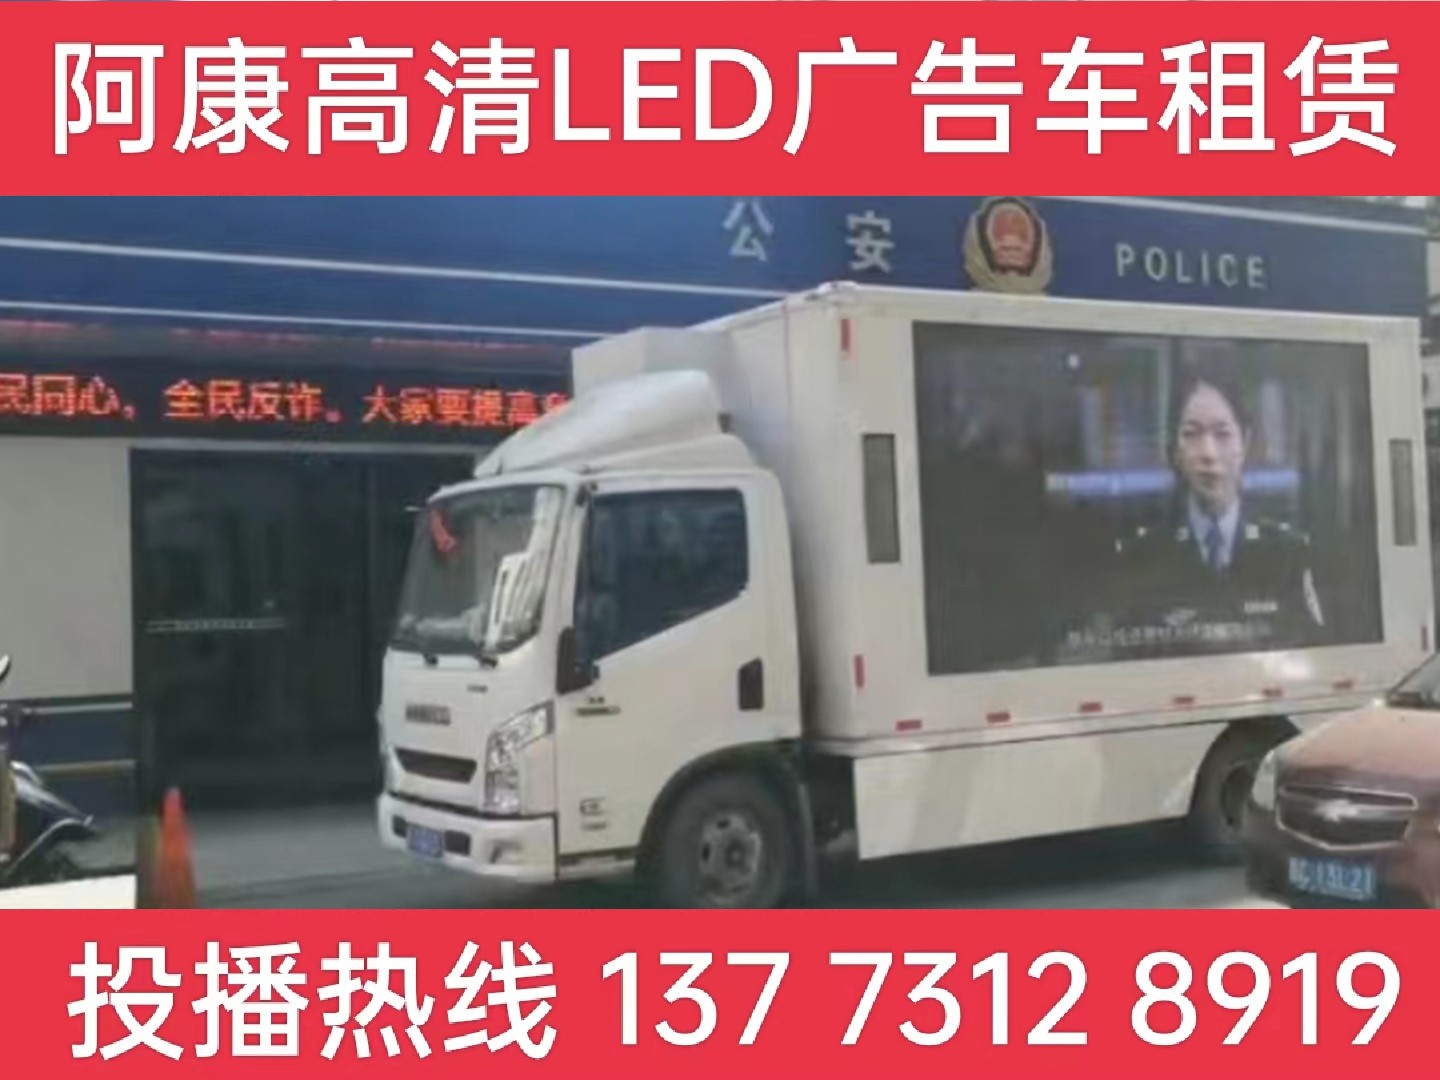 马鞍山LED广告车租赁-反诈宣传